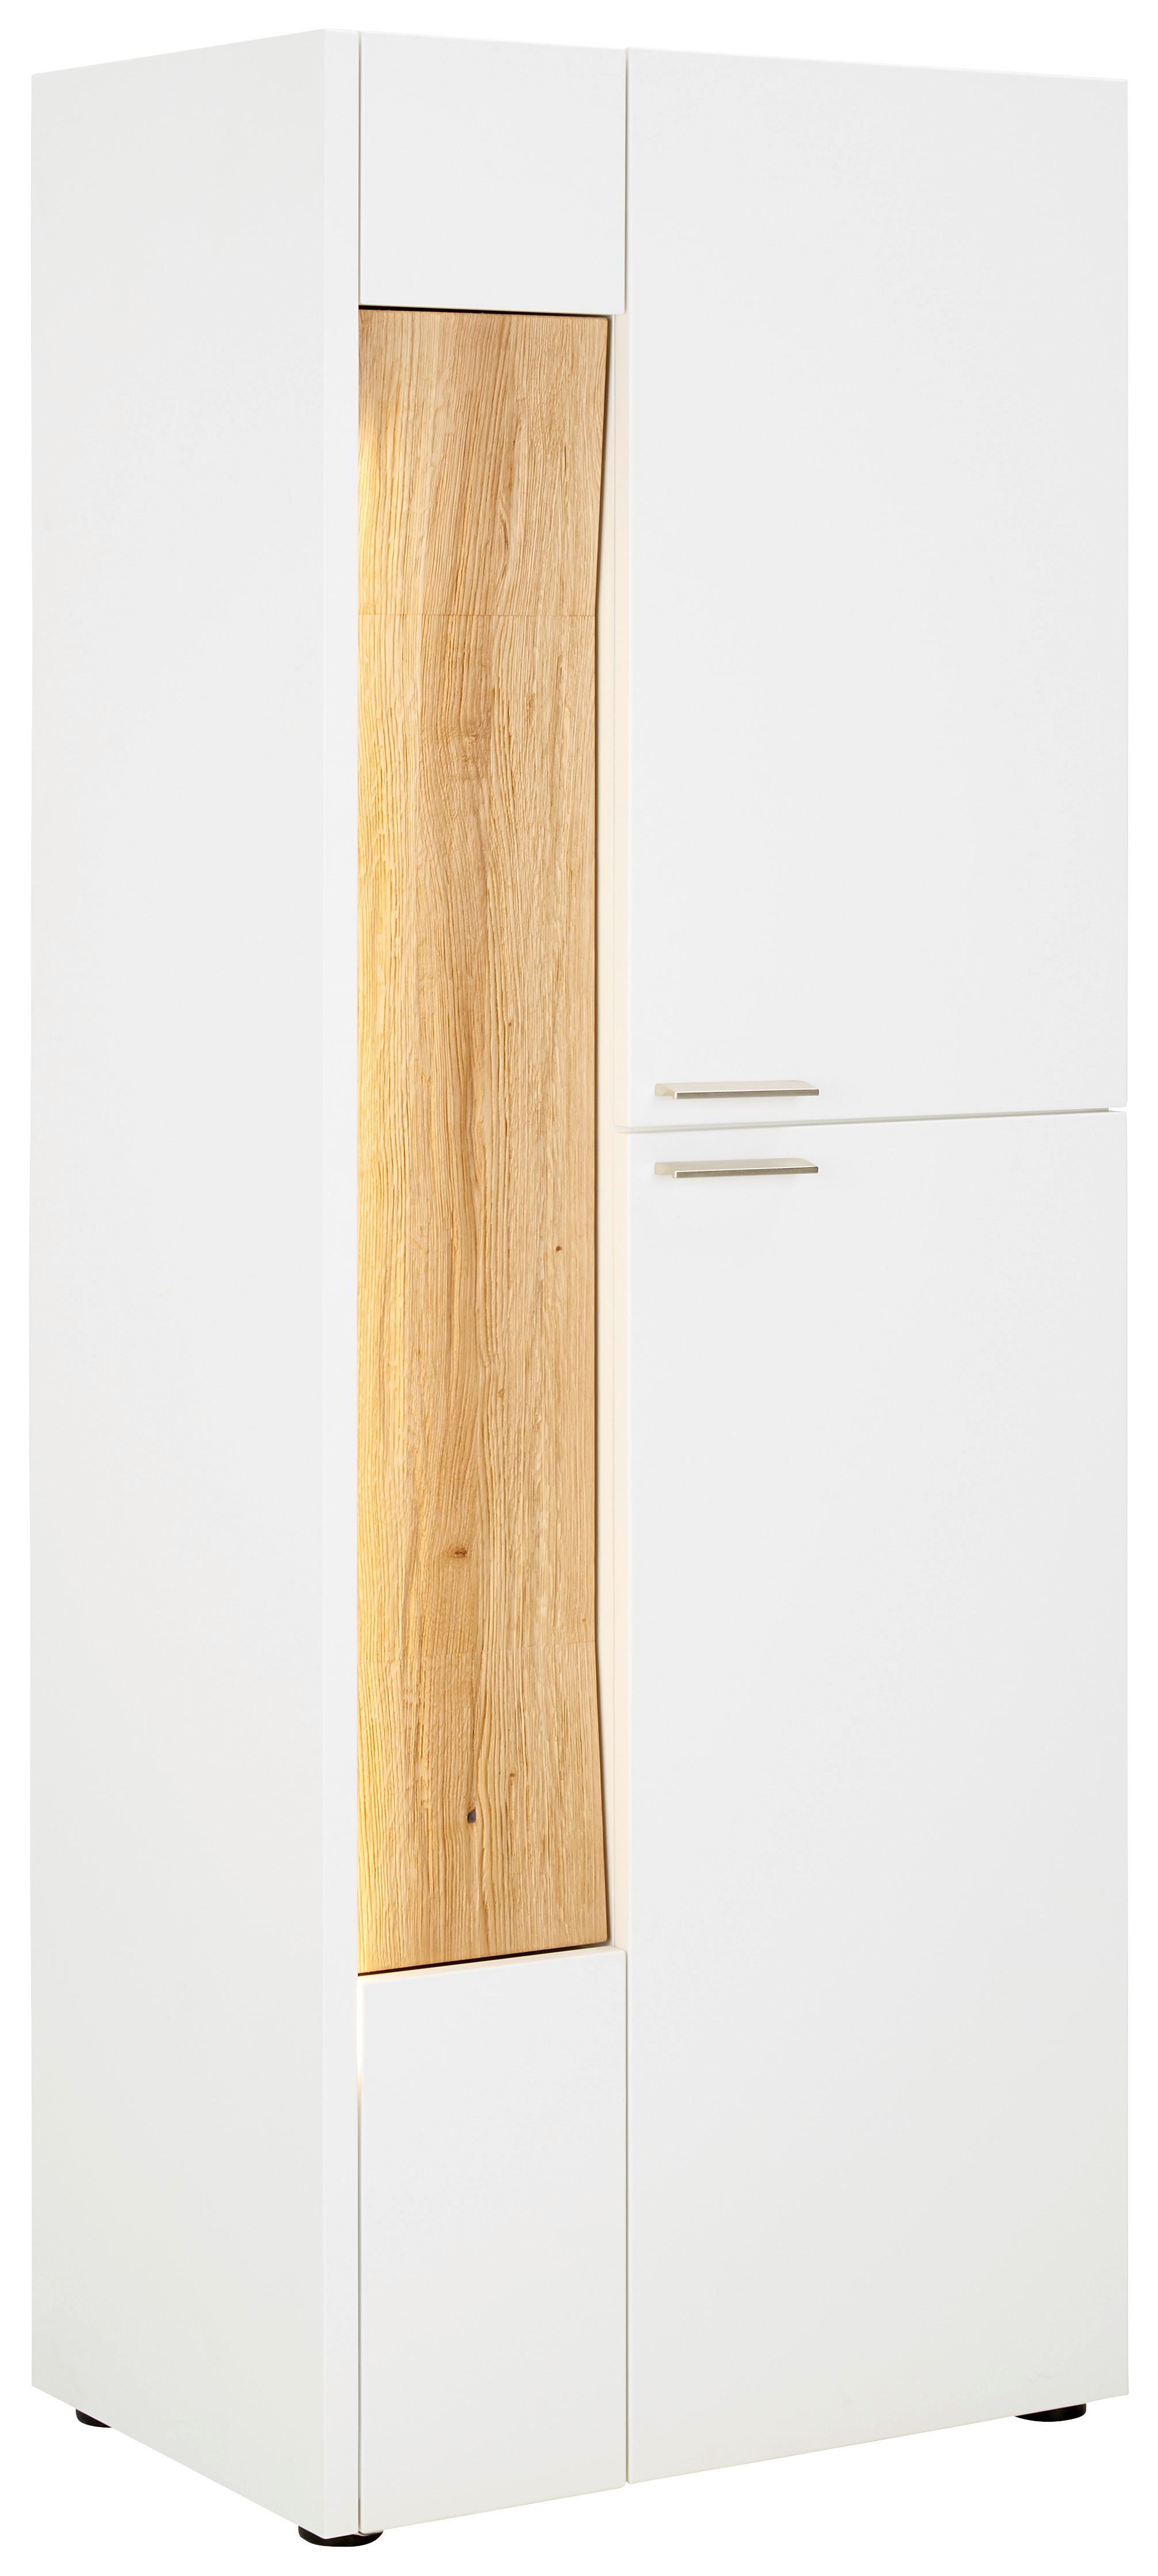 Highboard in Weiss/Eiche Massiv - Weiss/Edelstahlfarben, Modern, Glas/Holz (63/165/40cm) - Premium Living